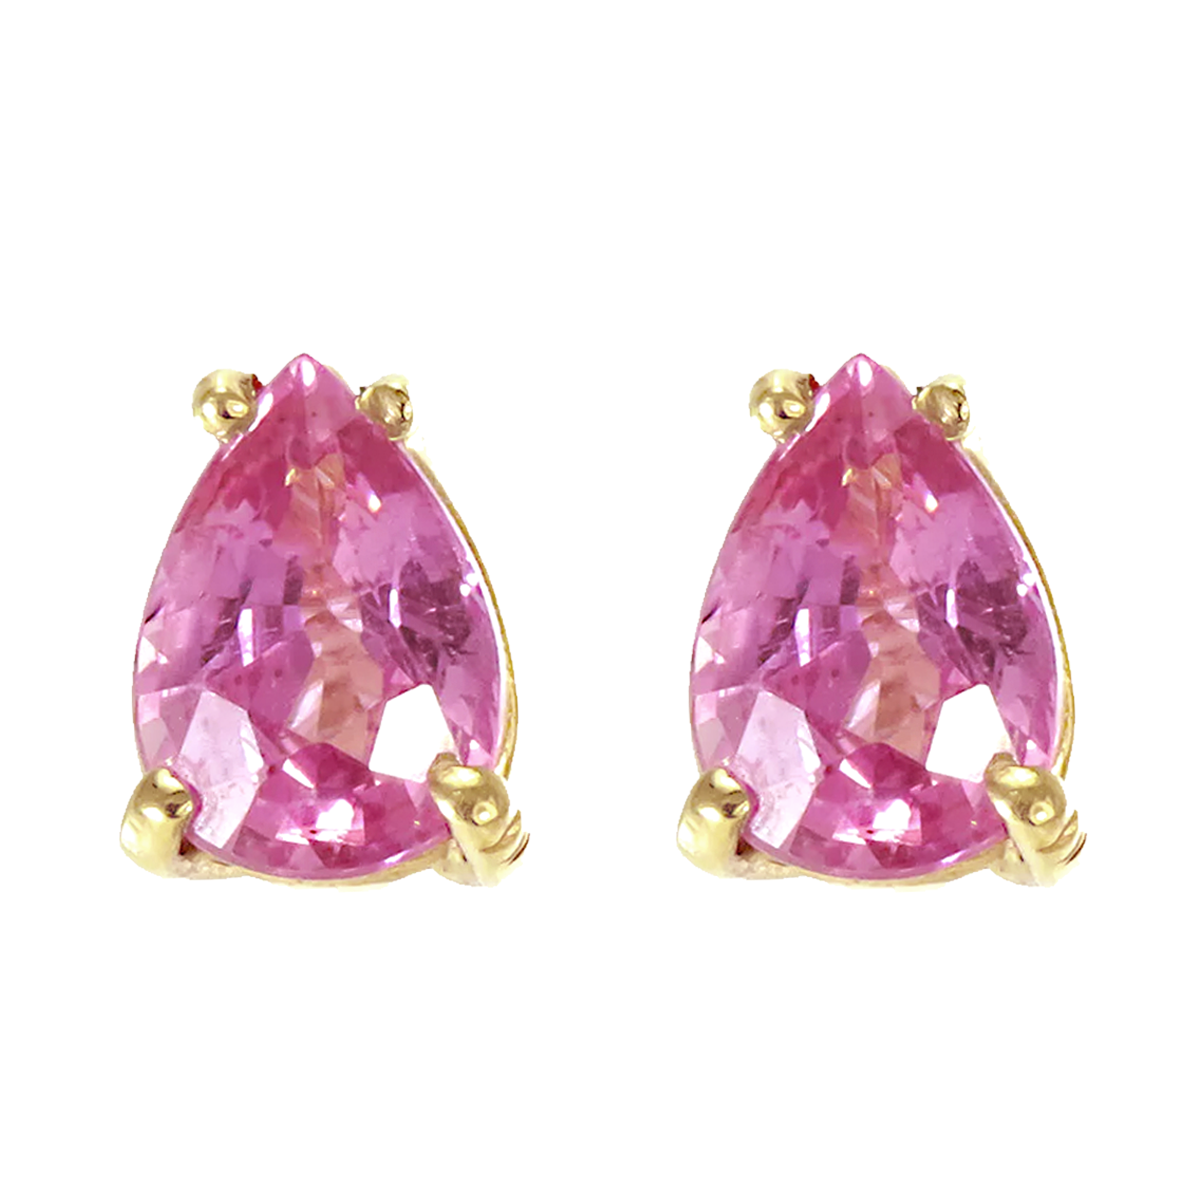 14k yellow gold pear shape pink sapphire stud earrings